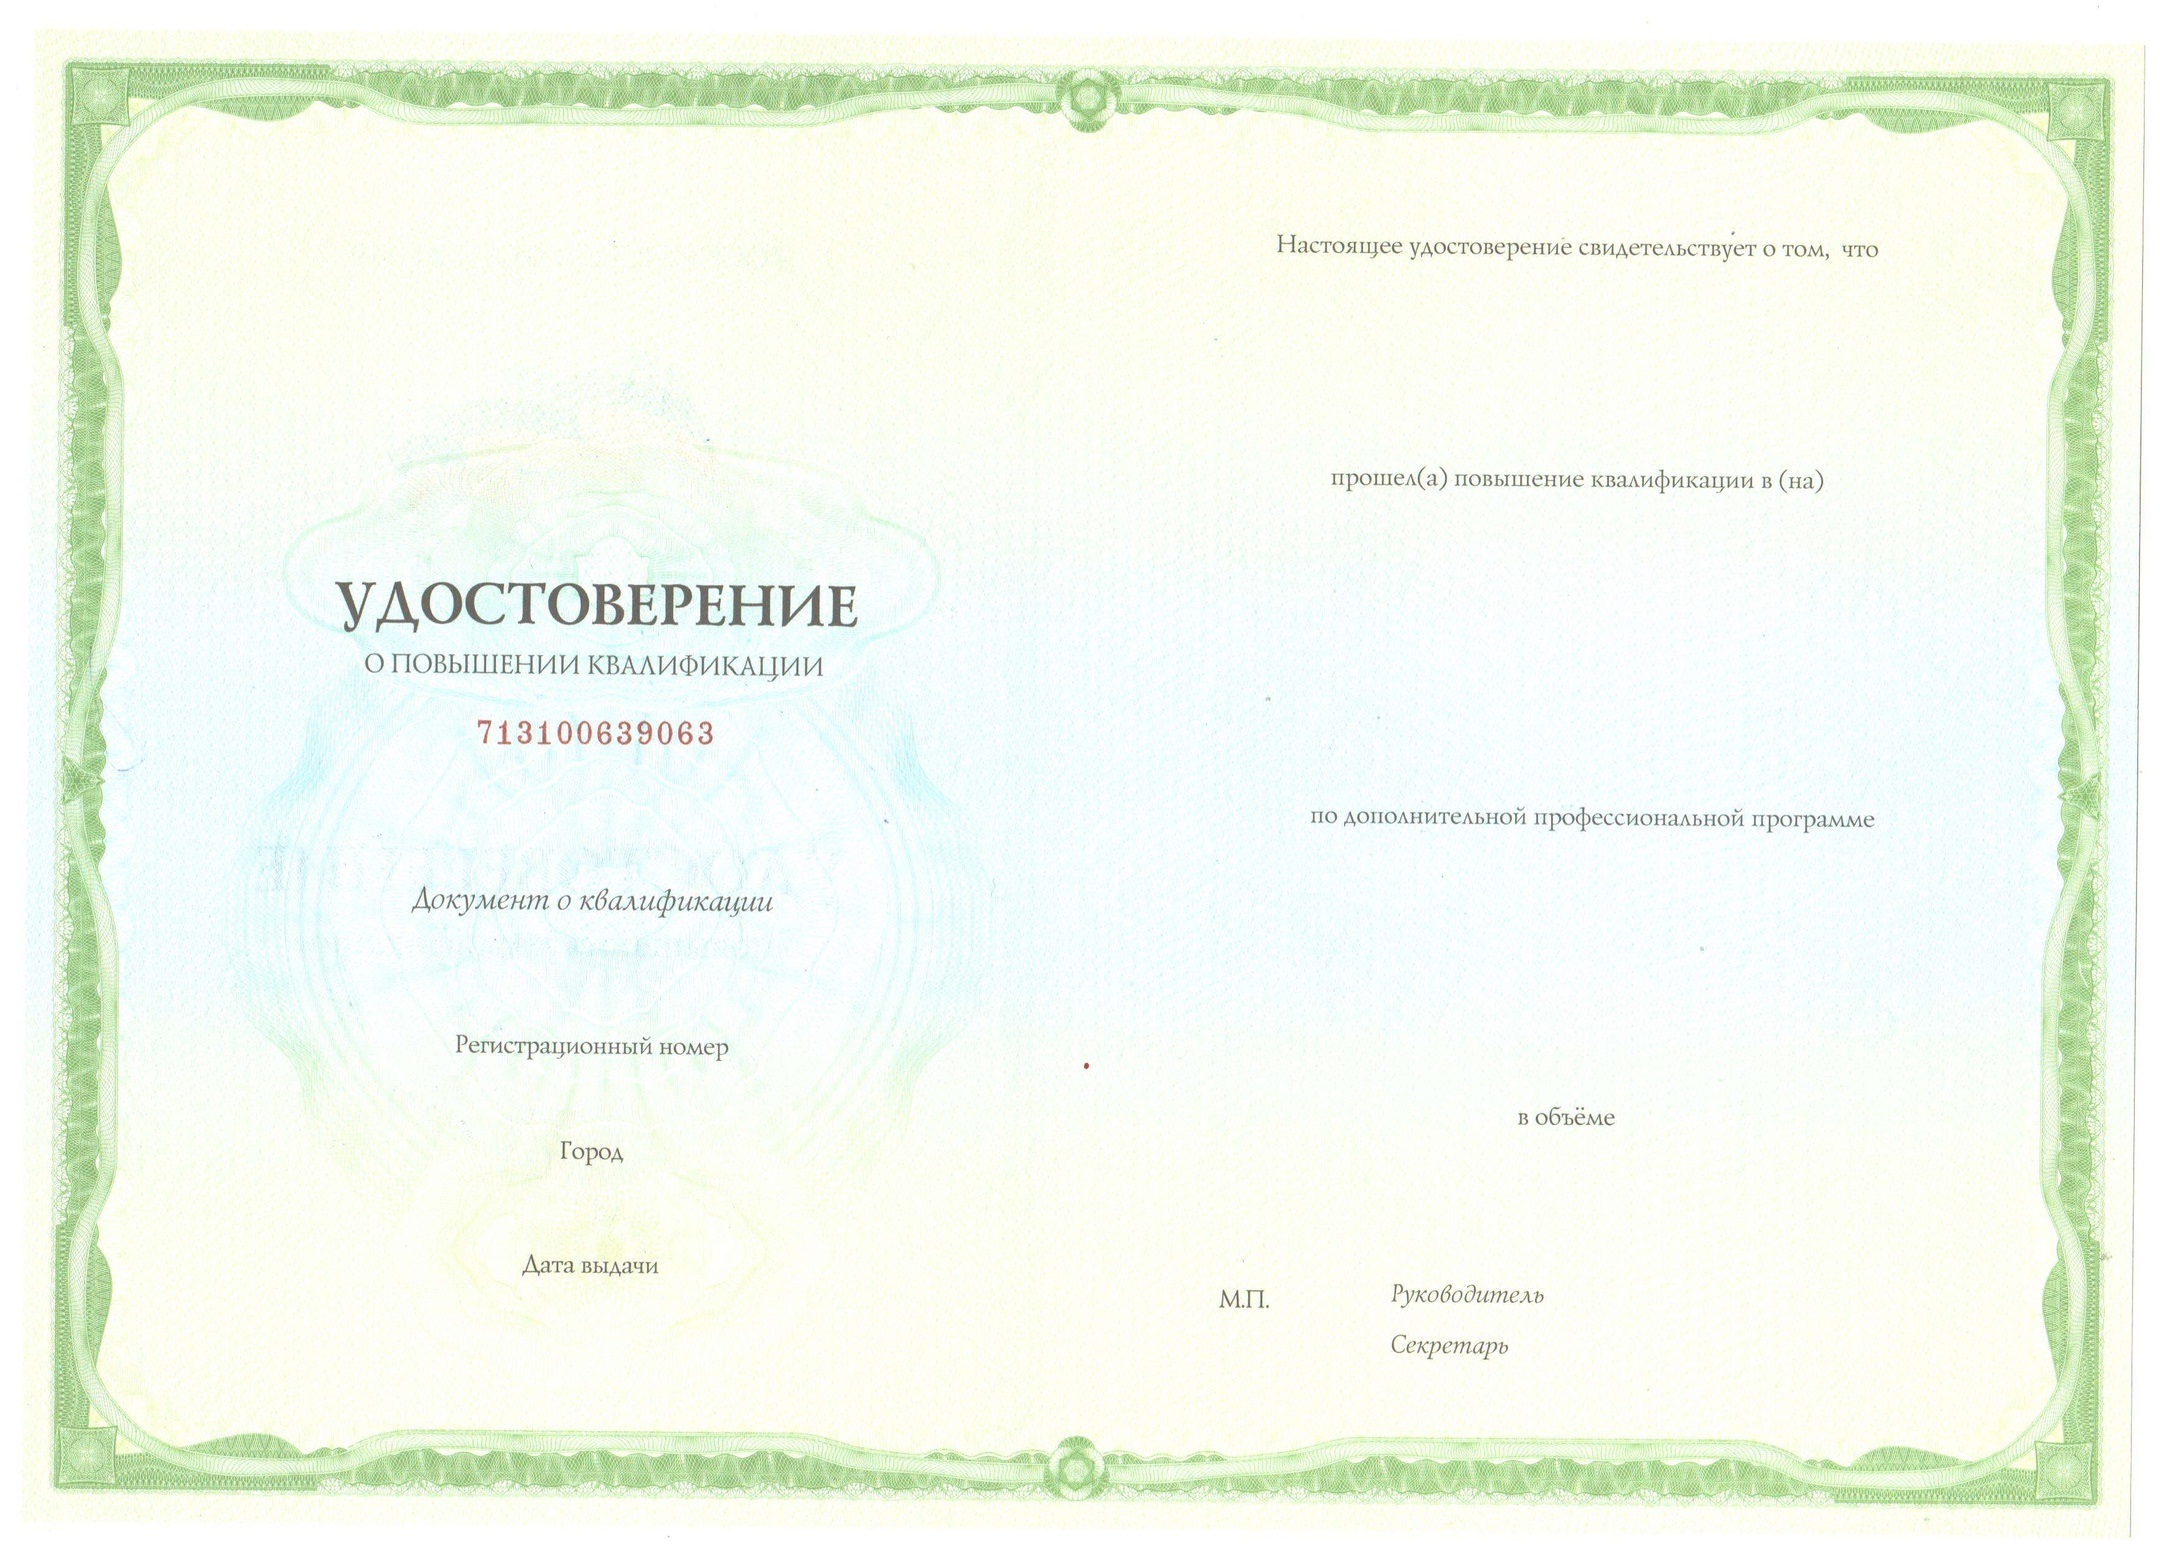 Образец удостоверения курсов повышения квалификации в IT и ИМ от ТулГУ